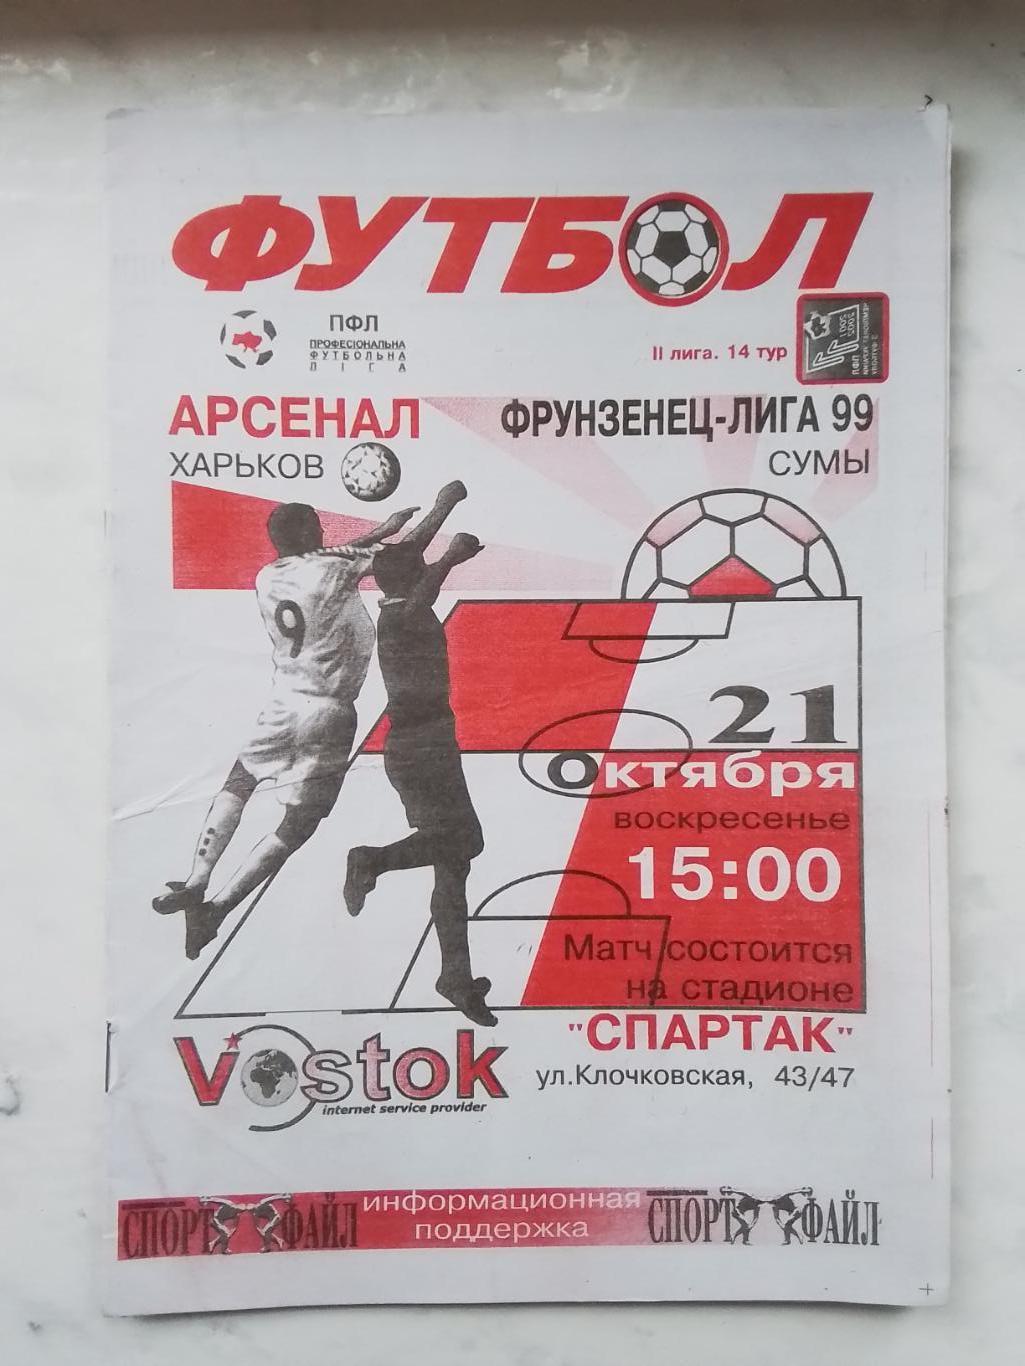 Арсенал Харьков - Фрунзенец-Лига-99 Сумы 2001 - 2002